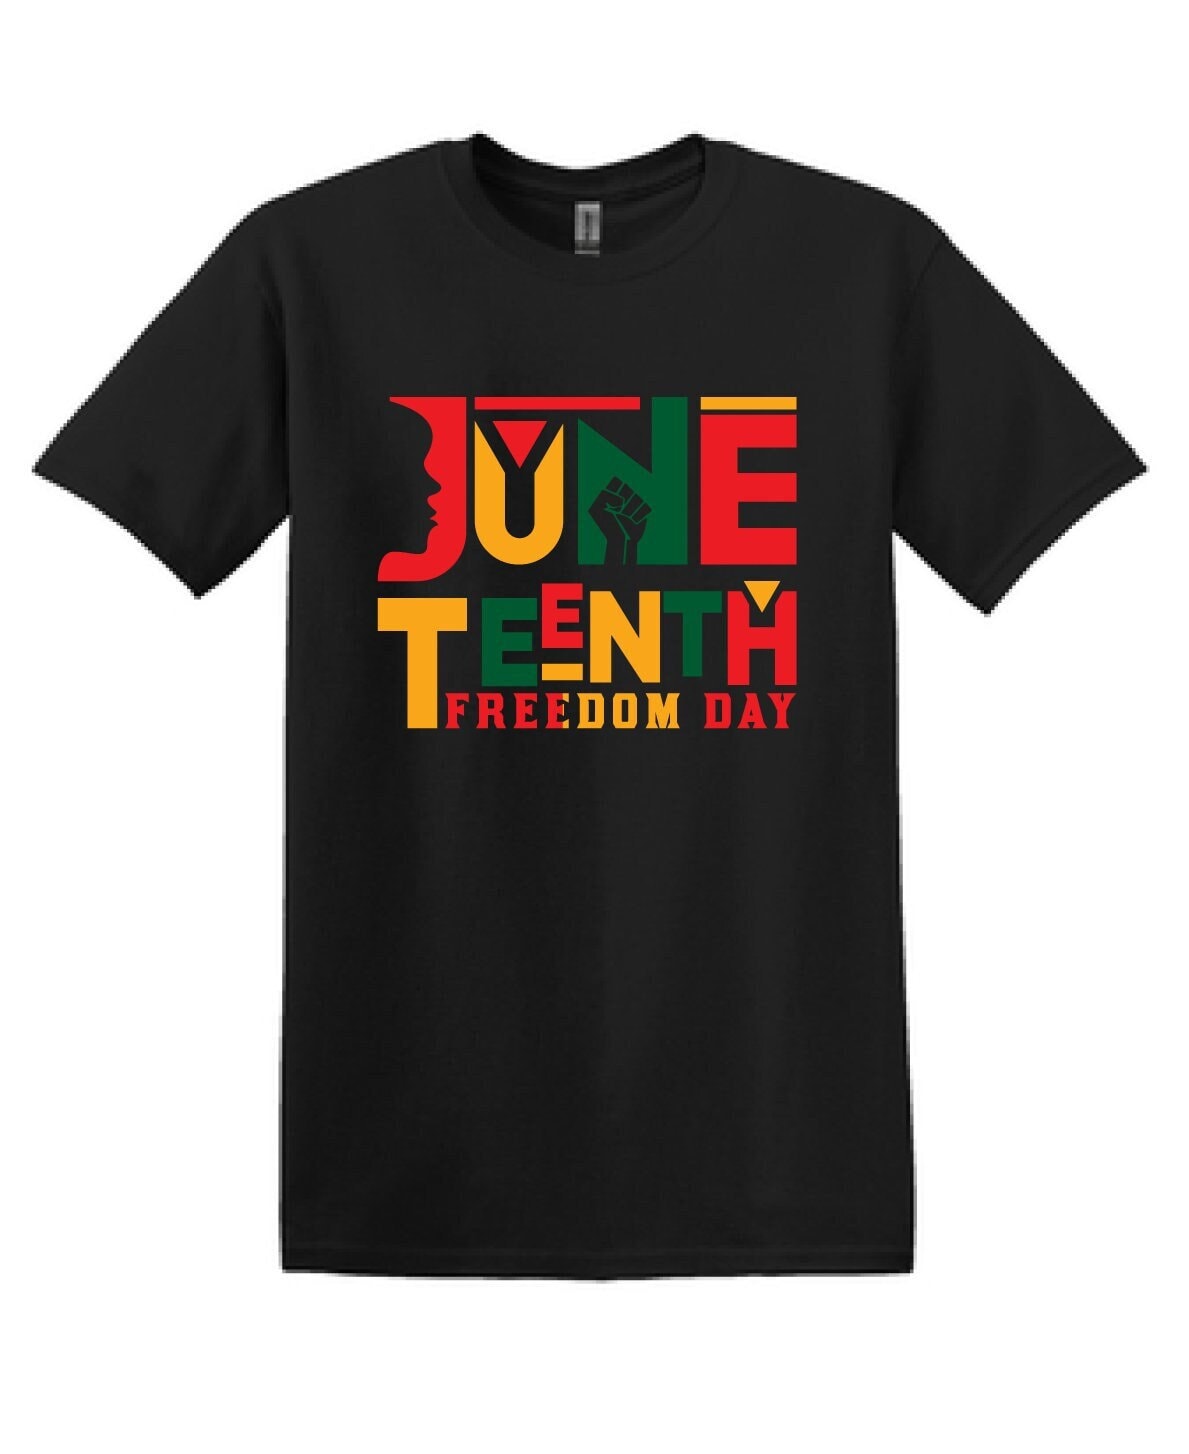 Embrace Freedom: Juneteenth Celebration T-Shirt - Uniting Heritage and Hope